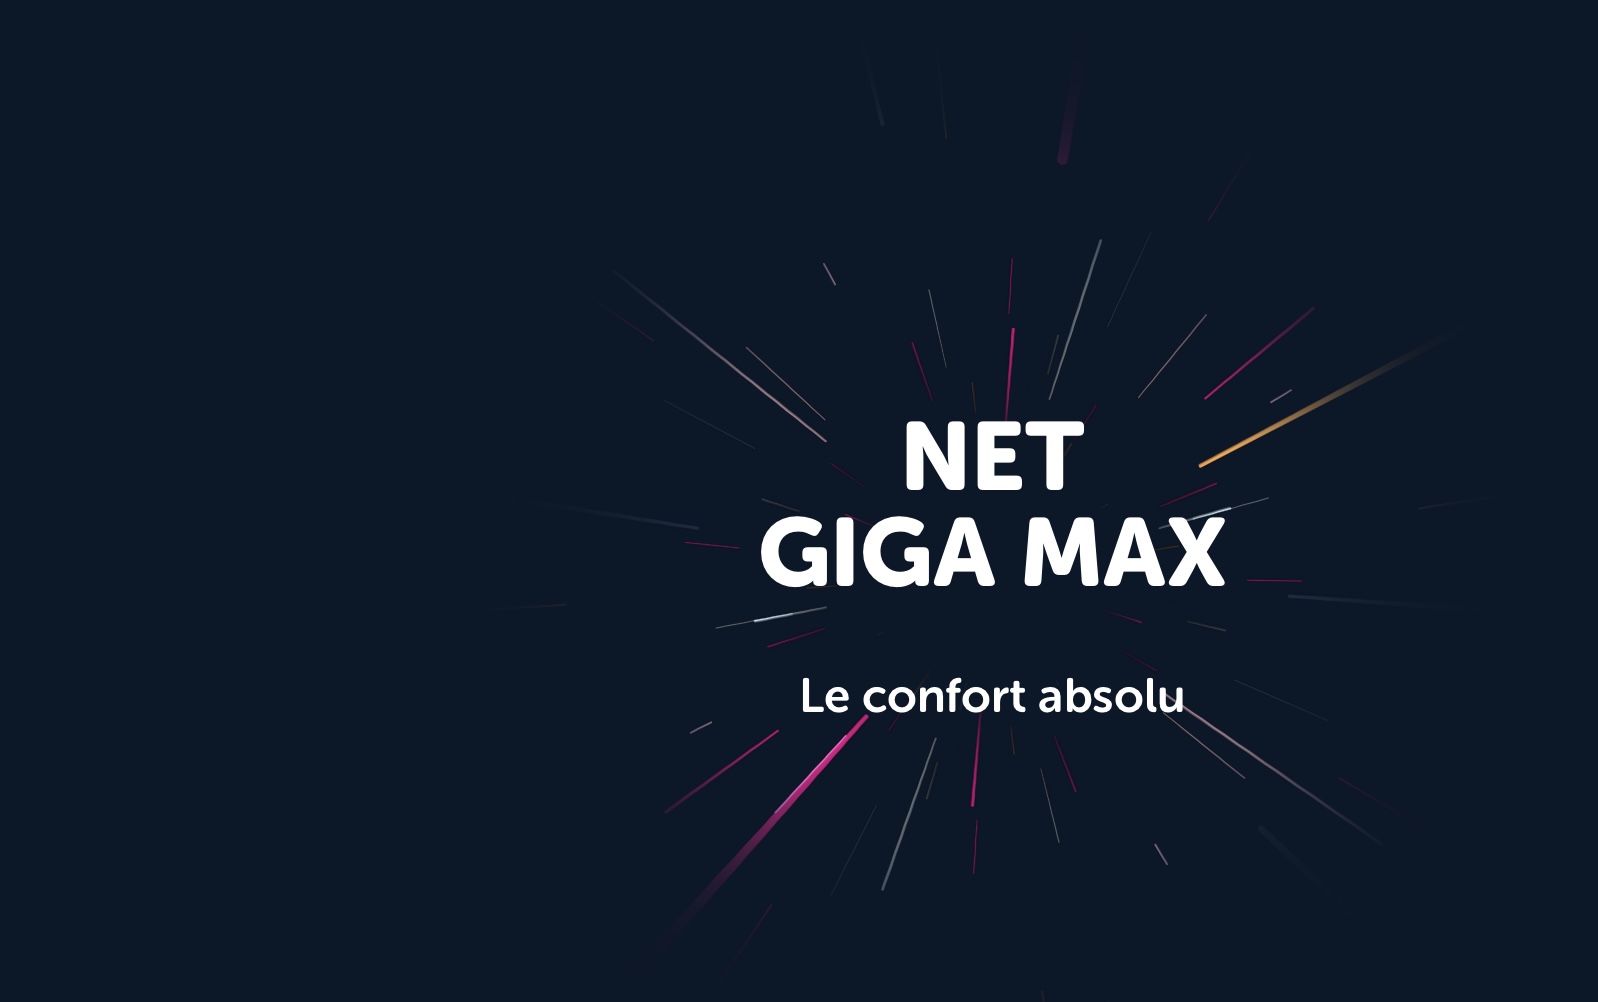 Avec GIGA MAX, VOO propose la vitesse fibre à Bruxelles et en Wallonie, le confort absolu